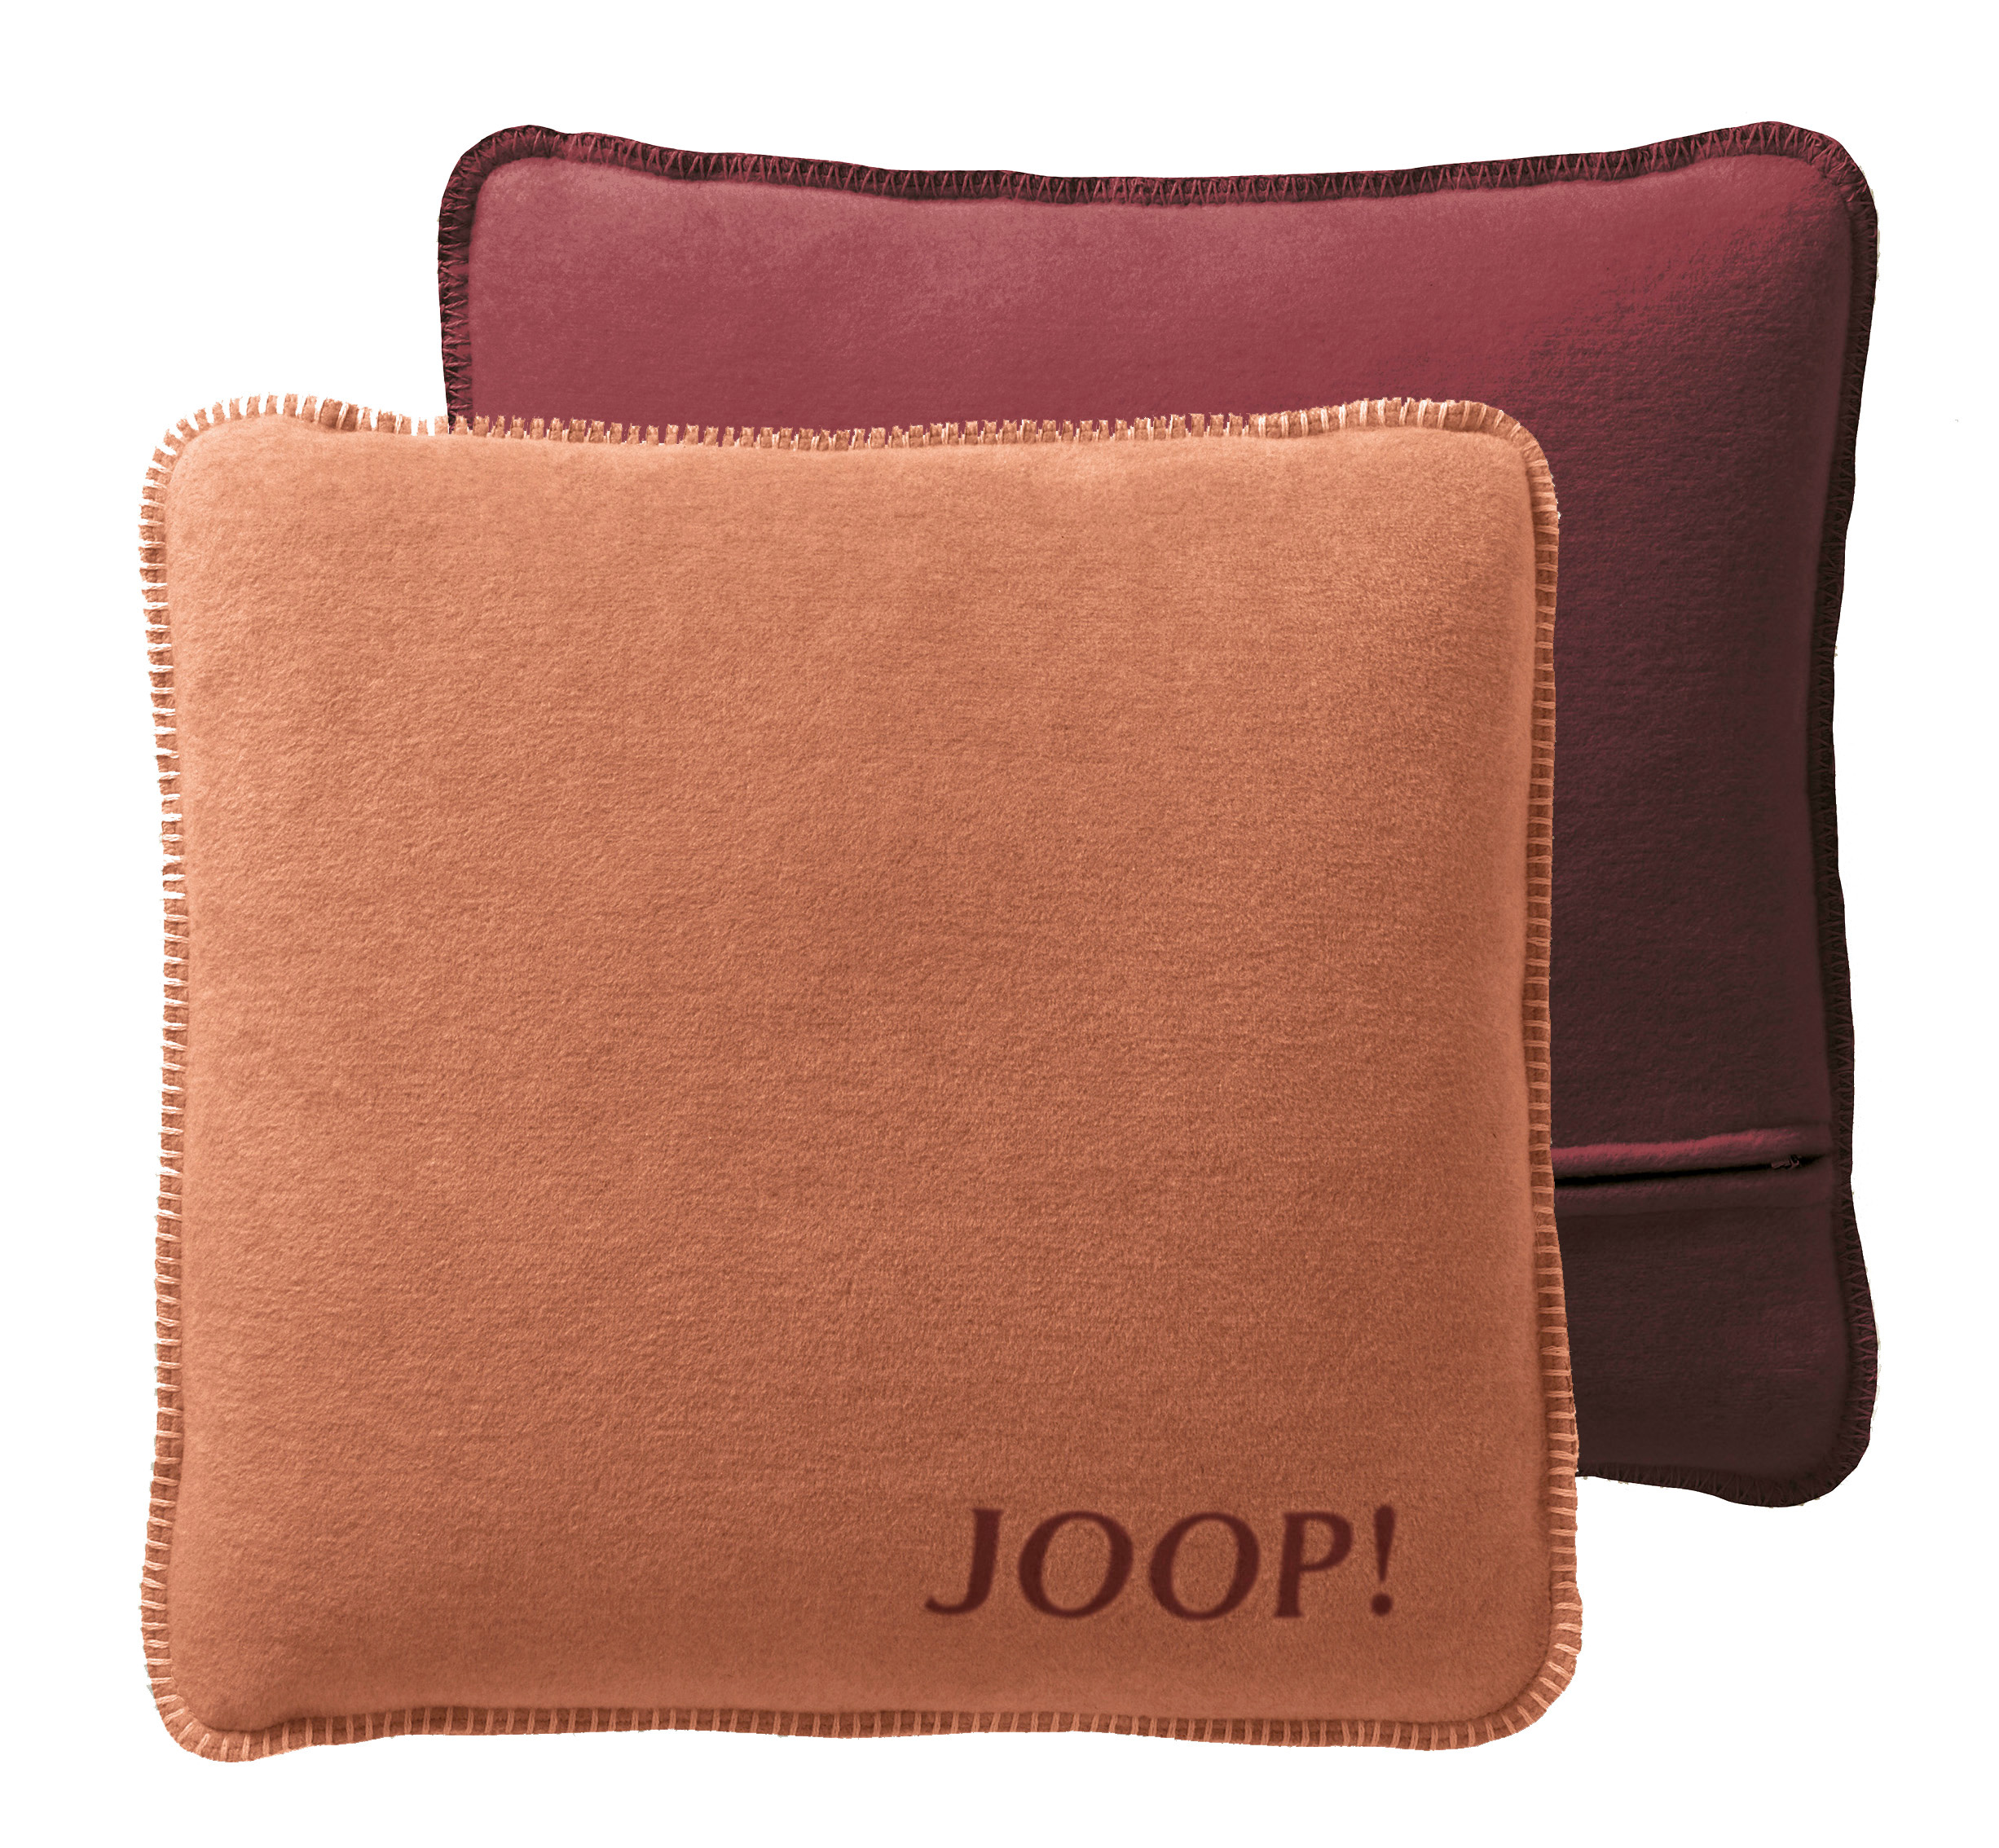 JOOP! Kissen Uni-Doubleface Kupfer-Granat - Vorder- und Rückseite